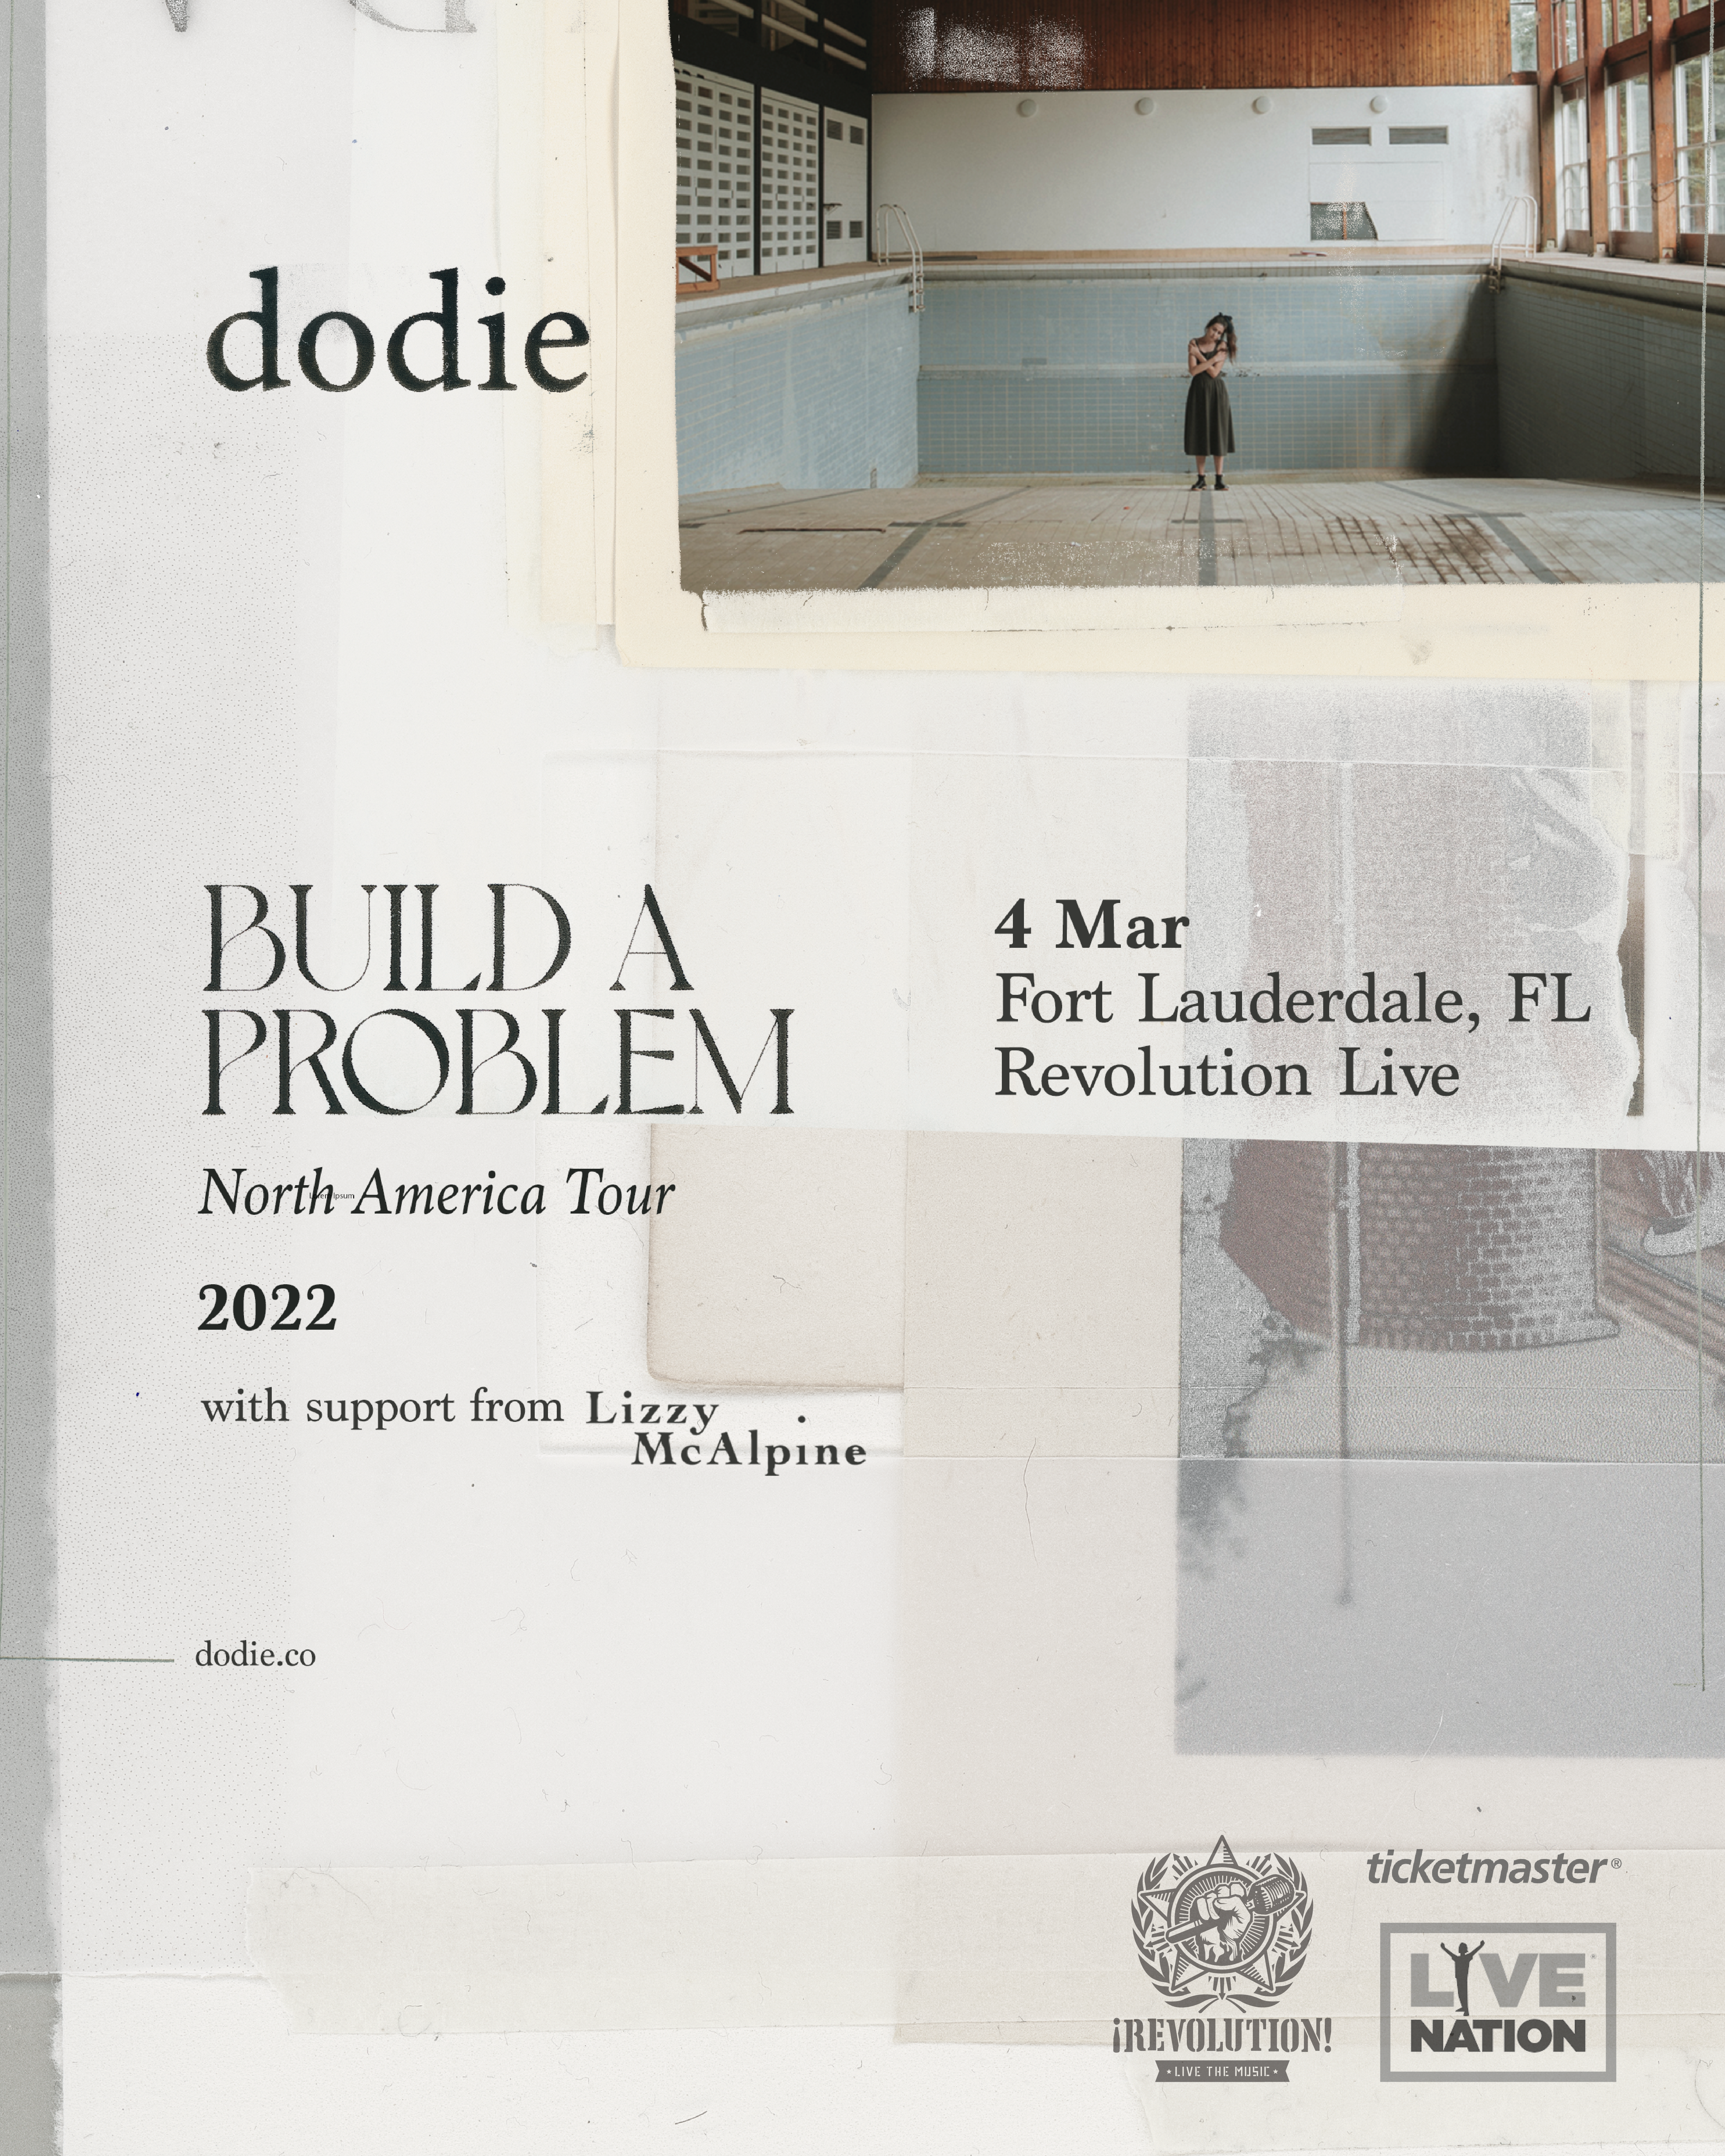 Dodie "Build a Problem Tour"